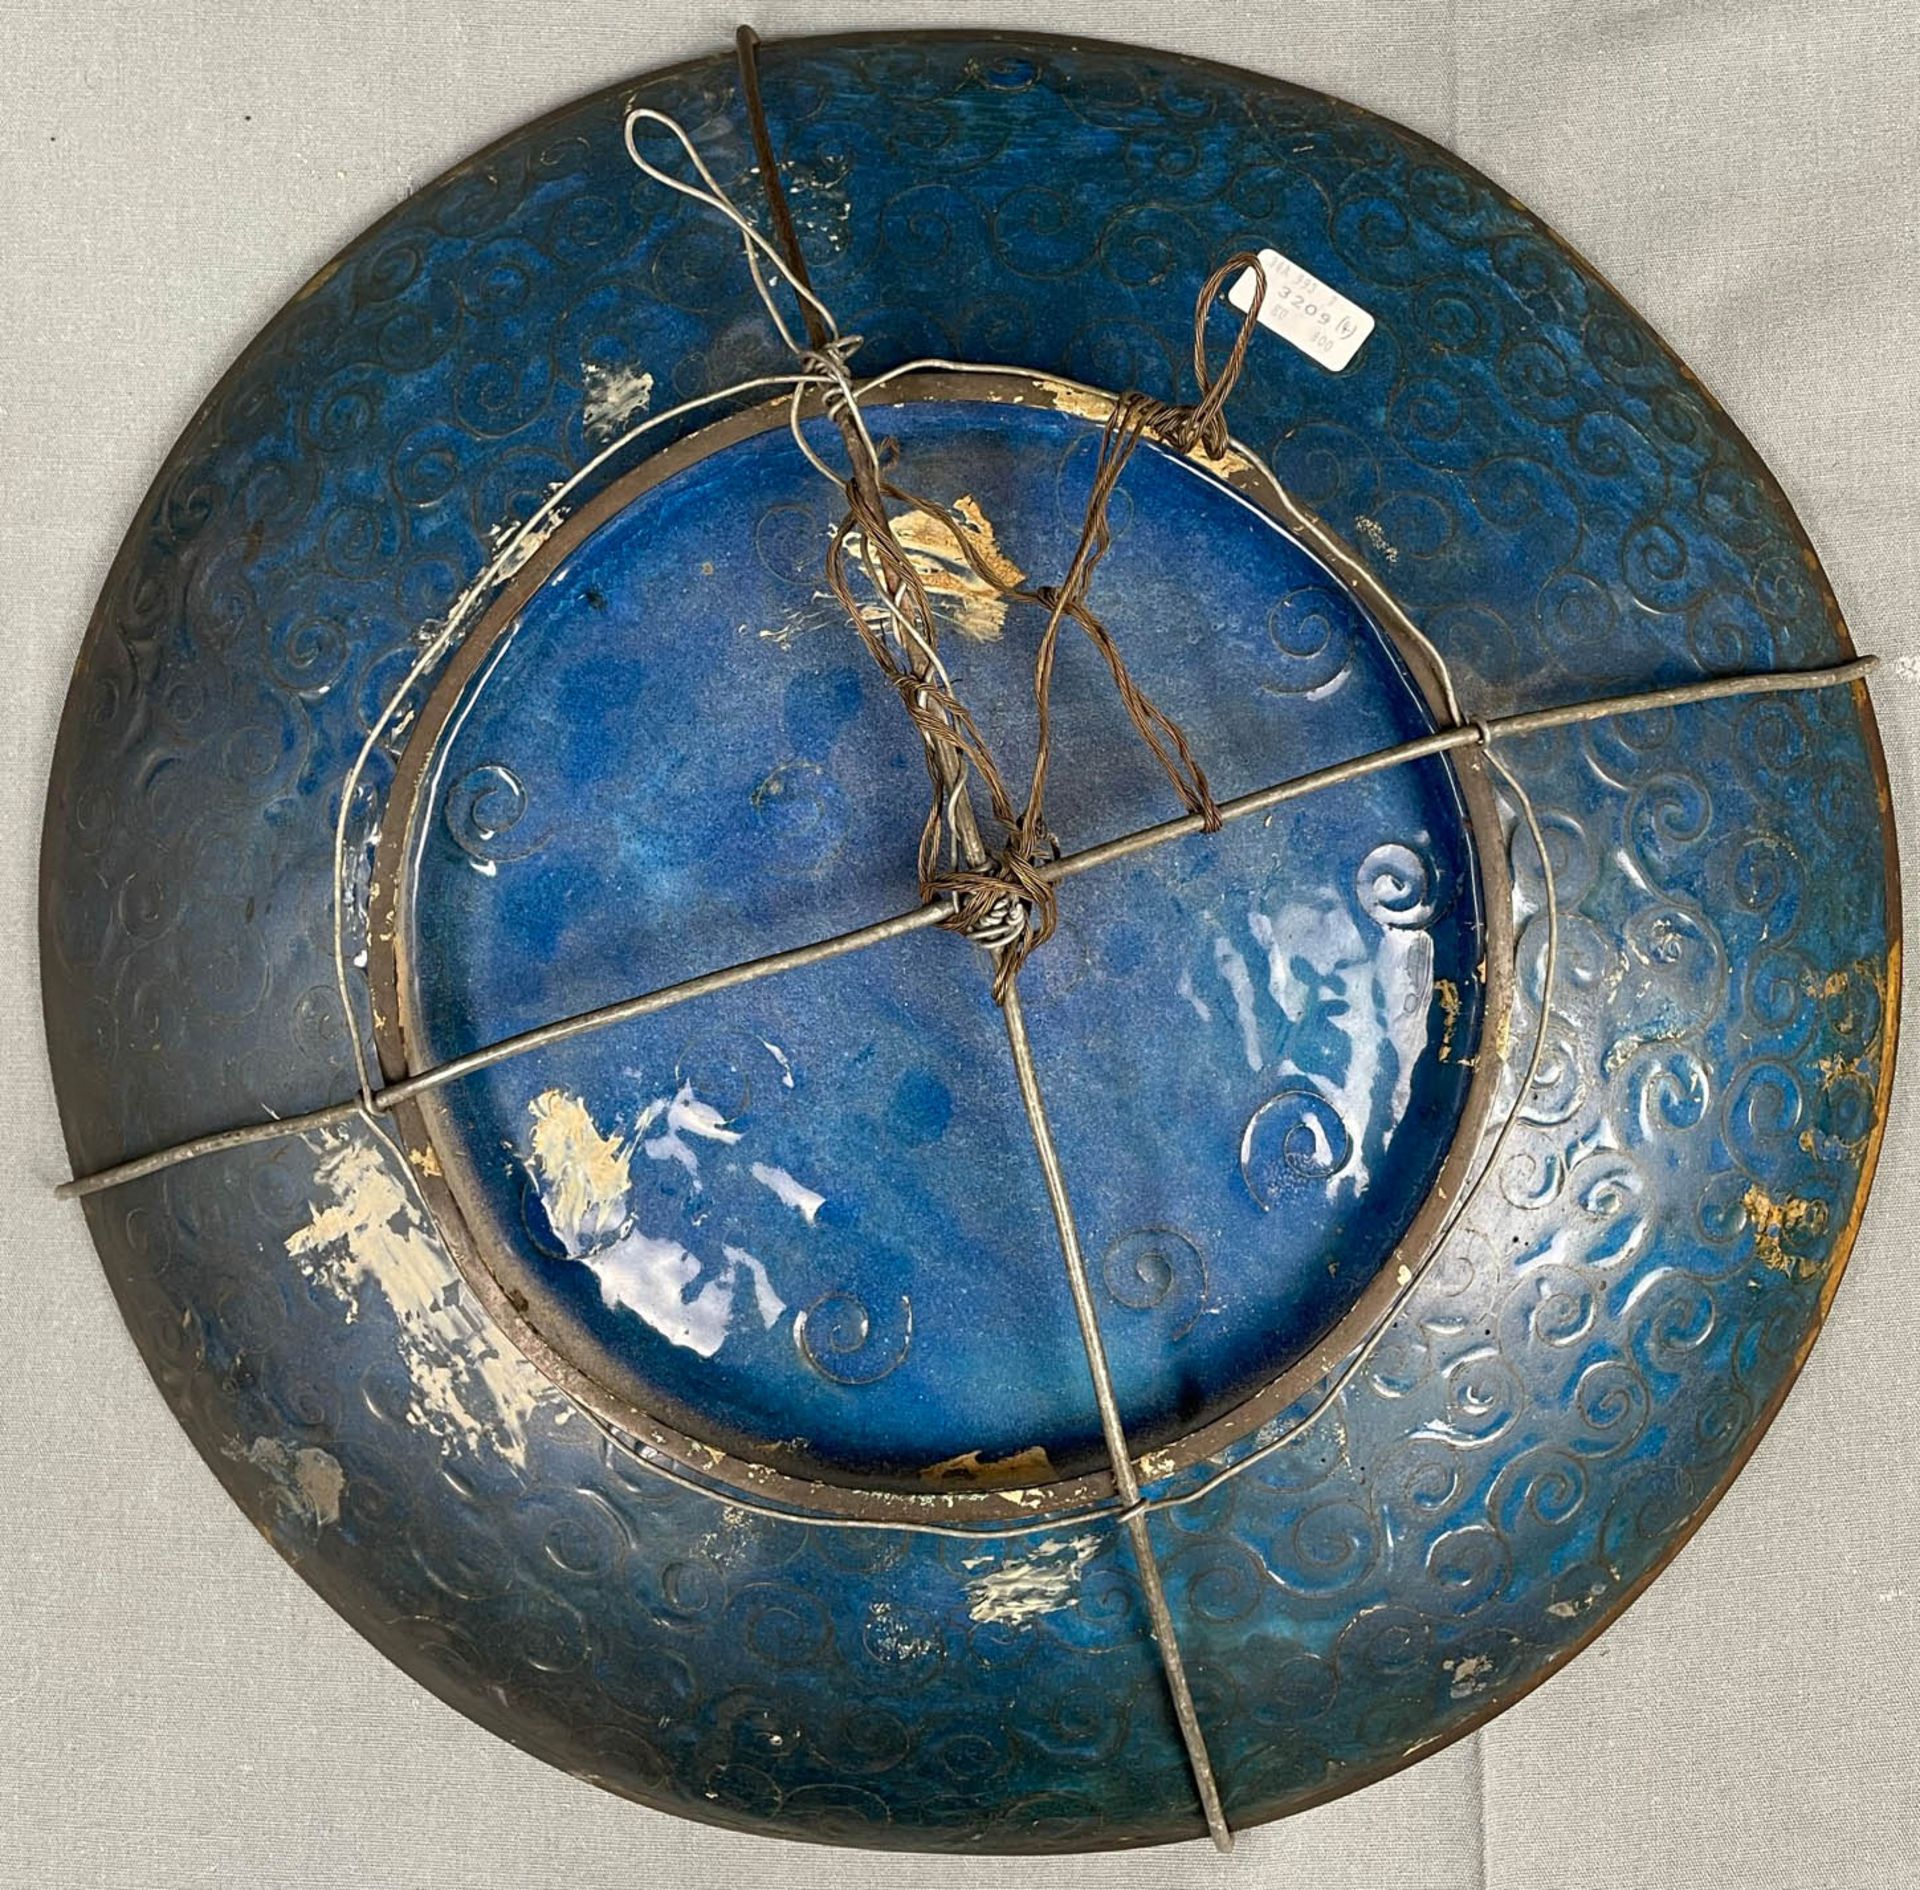 3 Cloisonné Platten. Wohl Japan, China alt. Bis 36,5 cm Durchmesser. - Image 12 of 22